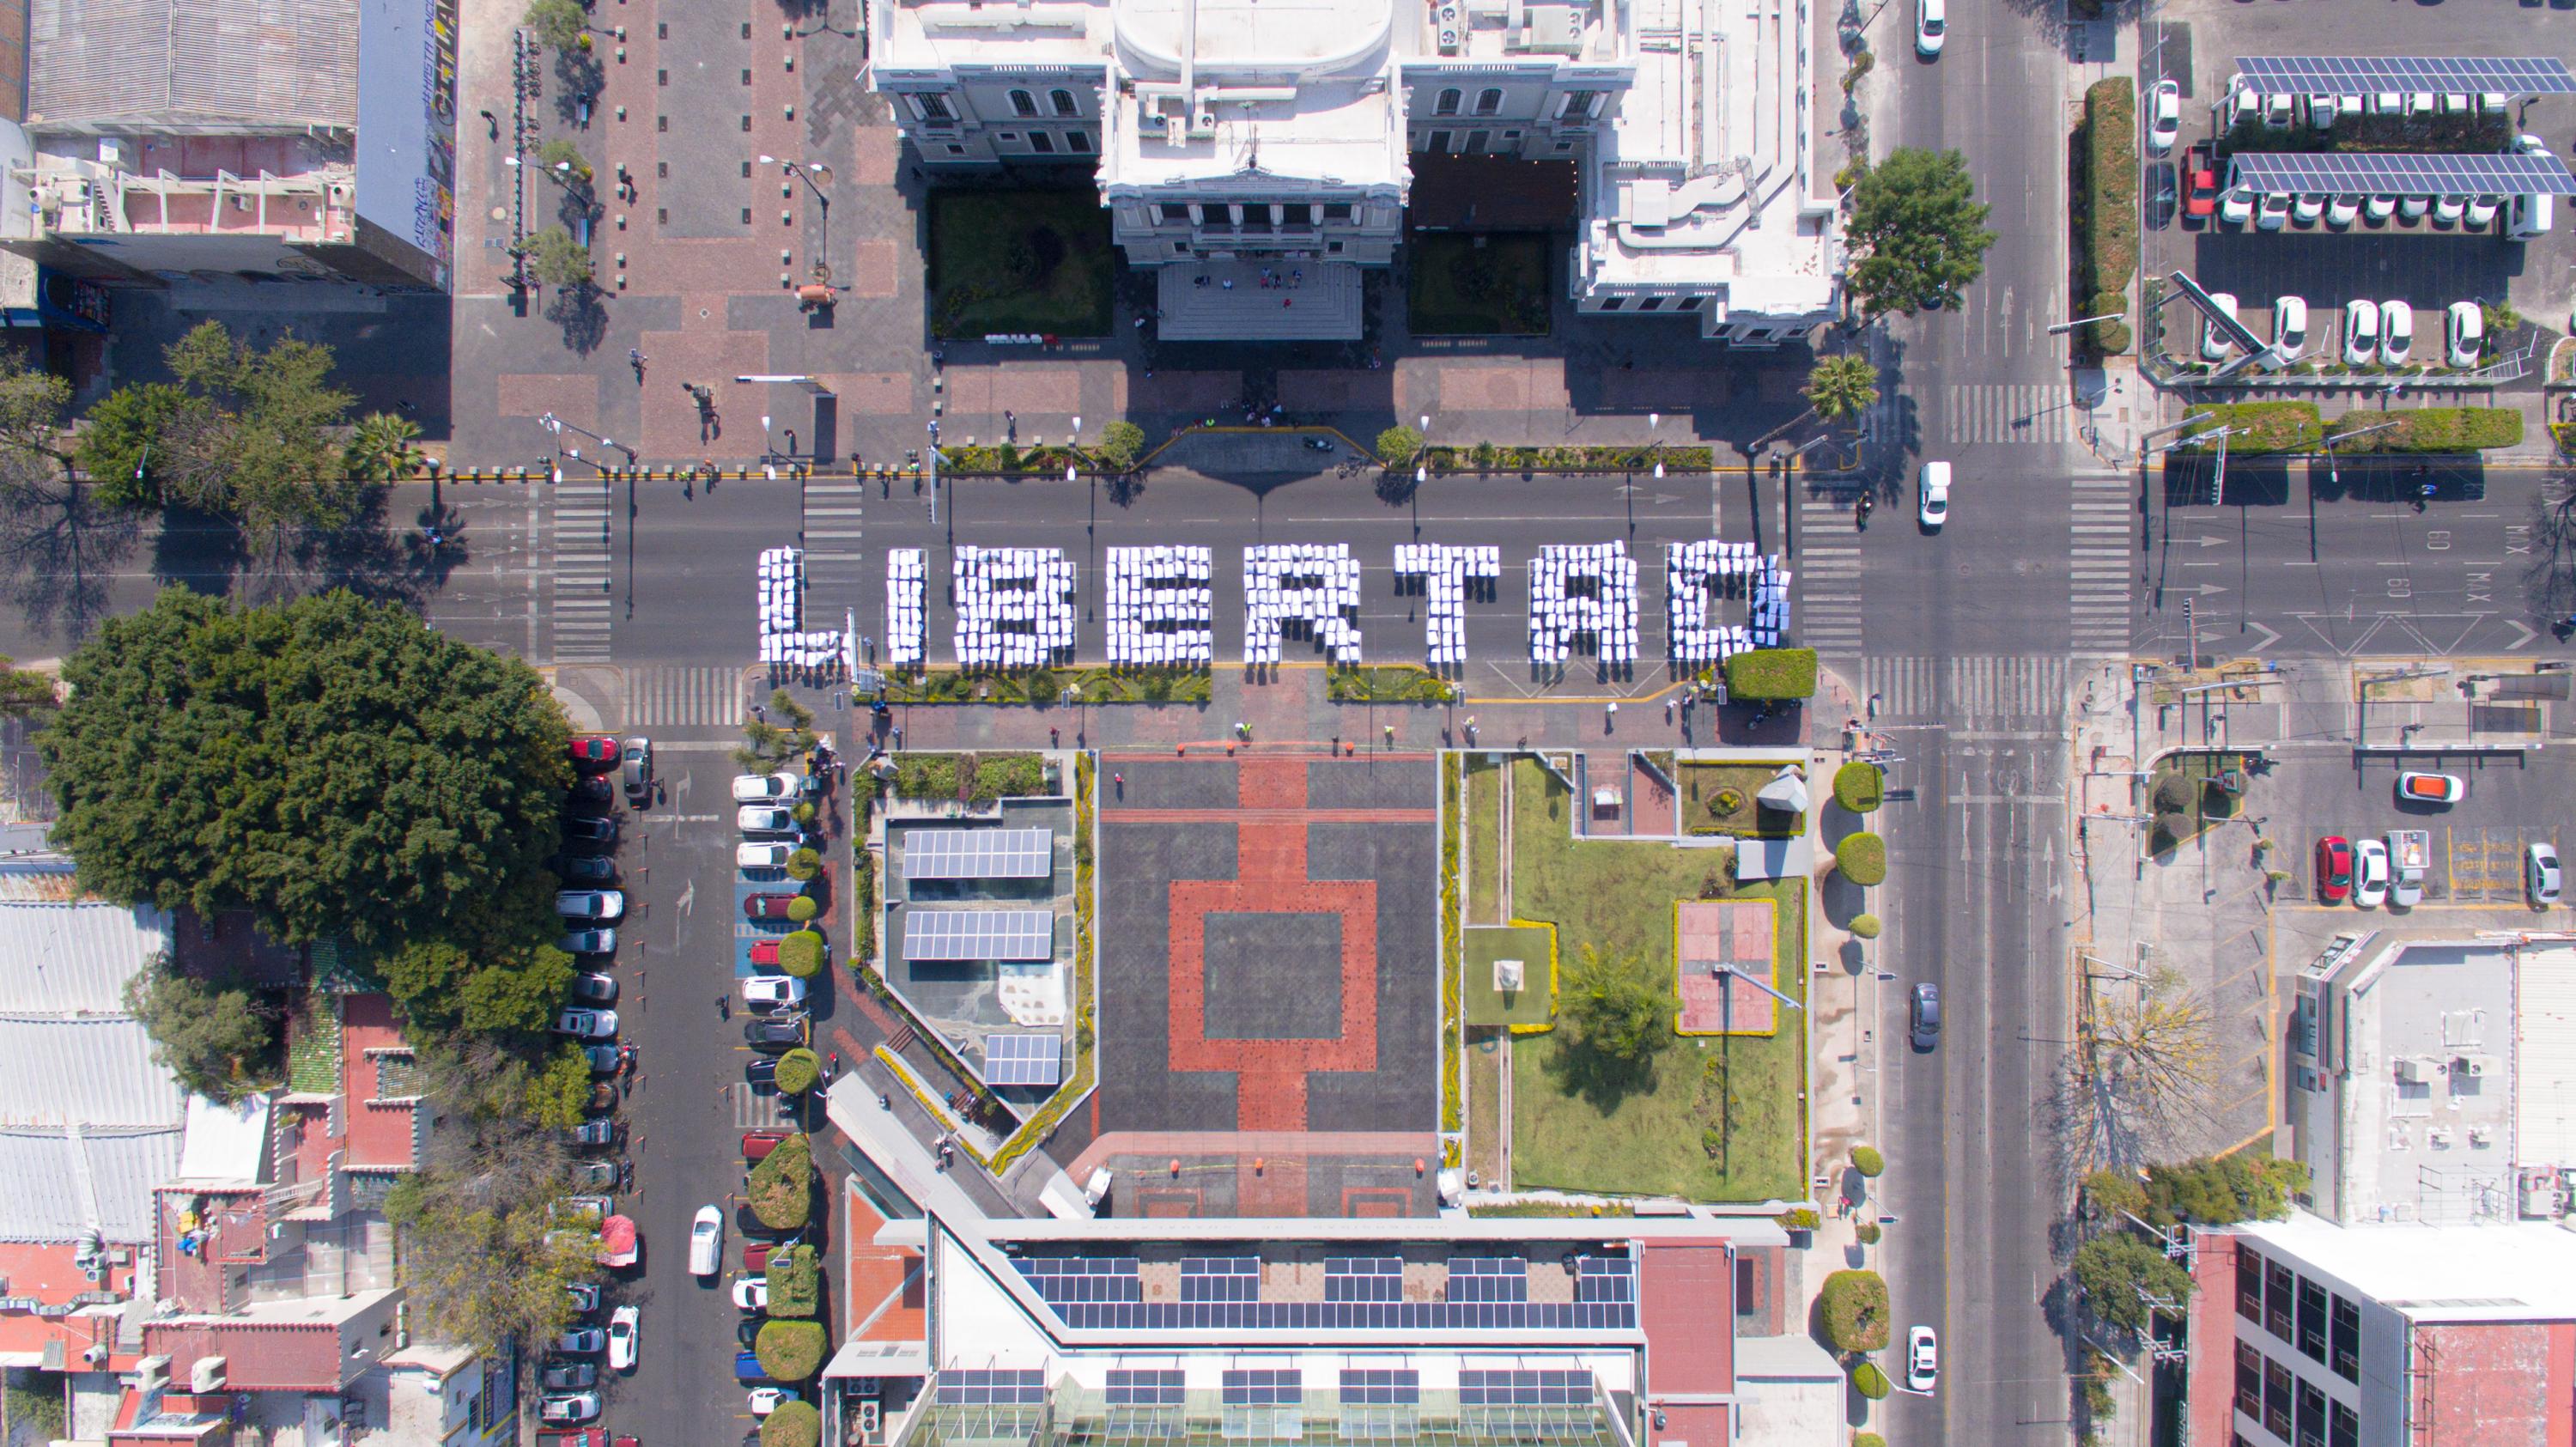 Frente a Rectoría General, la comunidad universitaria se congregó para formar la palabra “Libertad” en protesta por la encarcelación de Javier, Iván y José